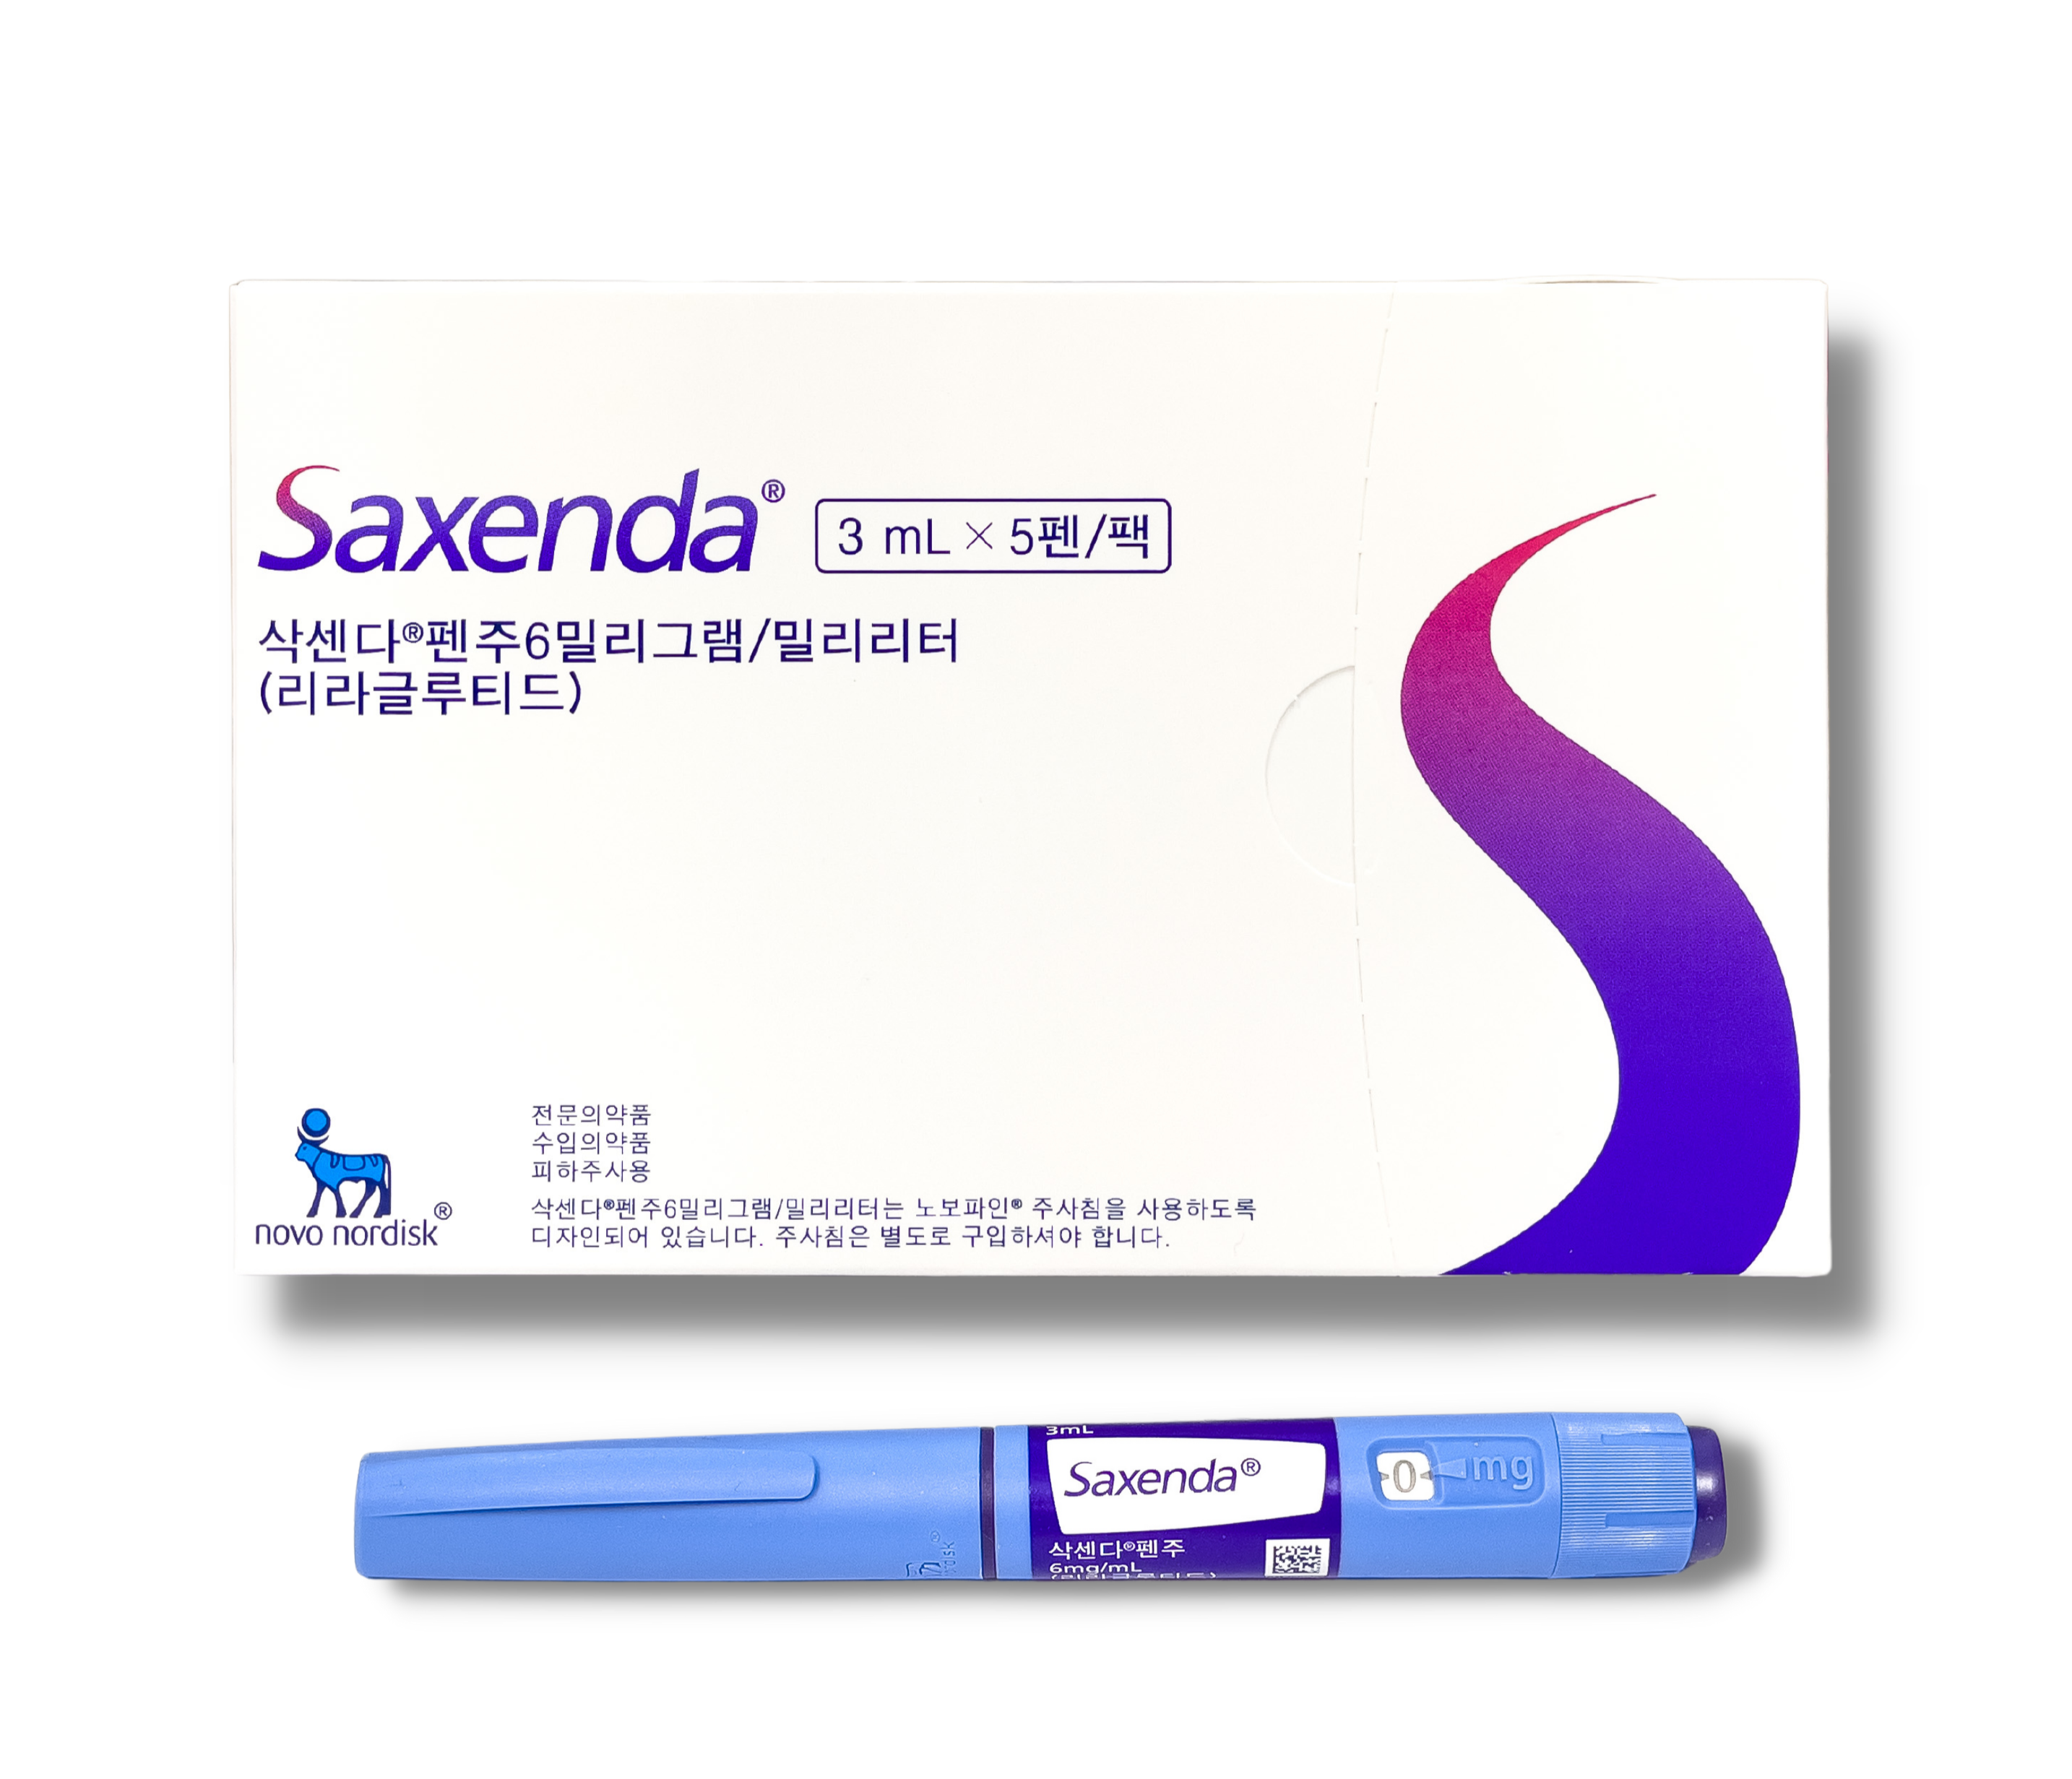 تعرّفي على دواء Saxenda ضمنَ قائمةِ أفضل حبوب تخسيس مرخصة من وزارة الصحة .